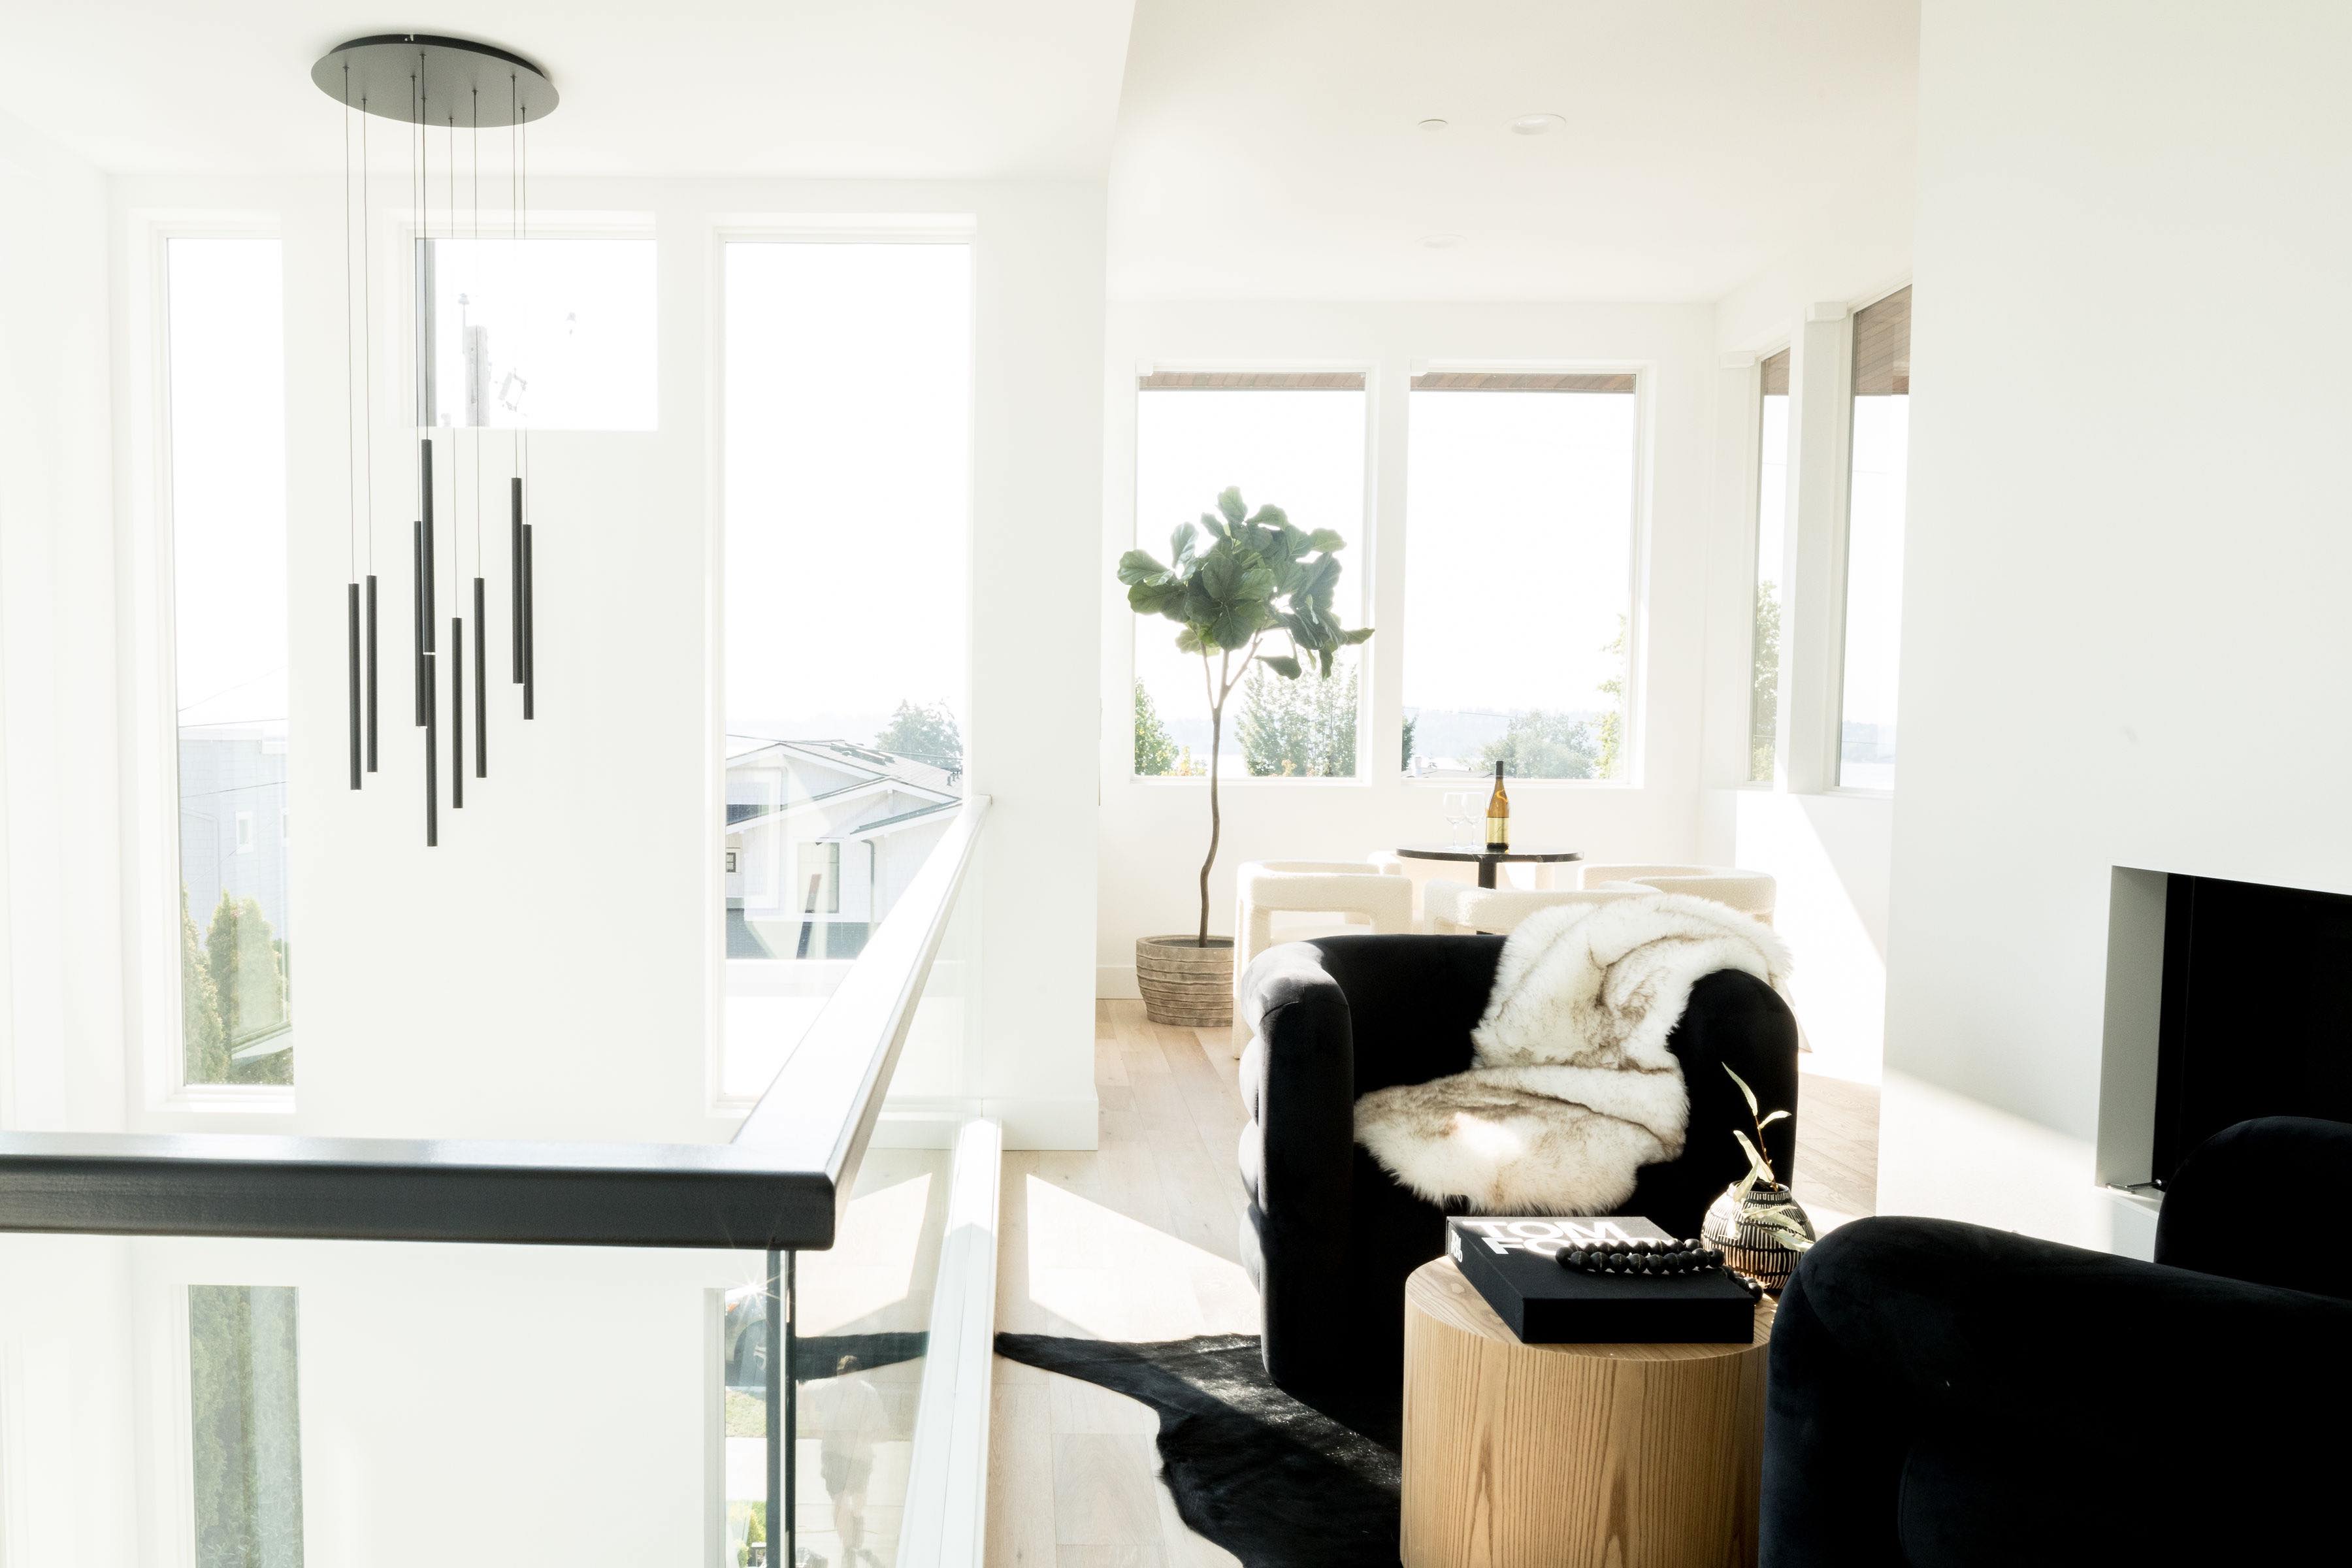 %luxury home staging %modern interior design